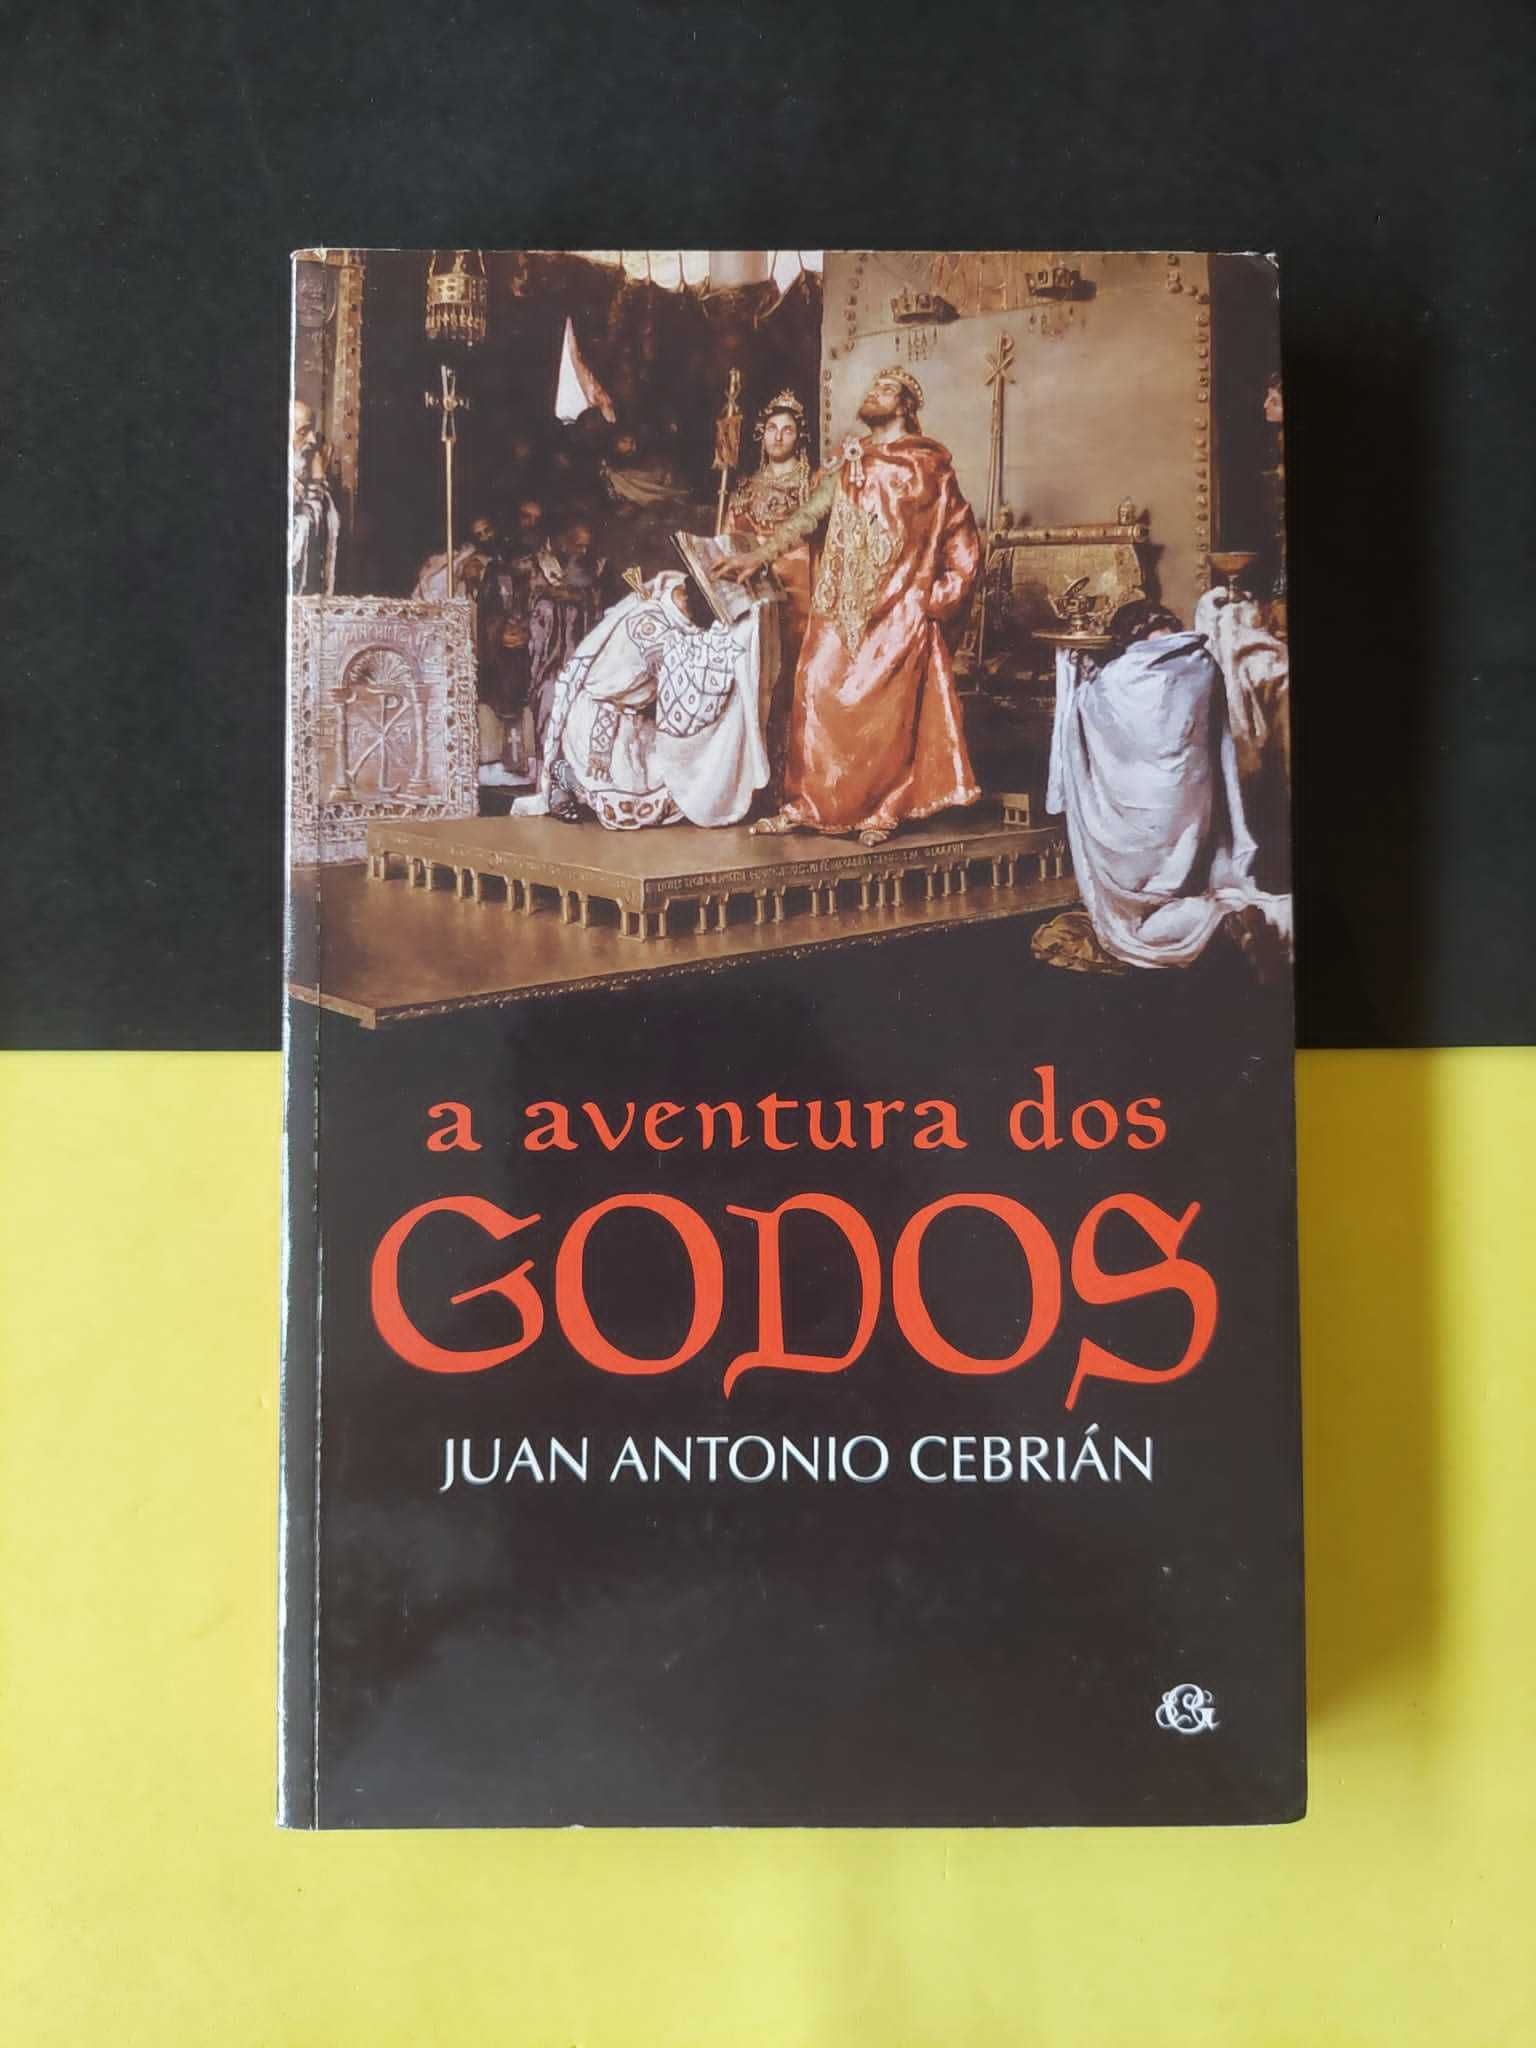 Juan Antonio Cebrián - Aventura dos Godos